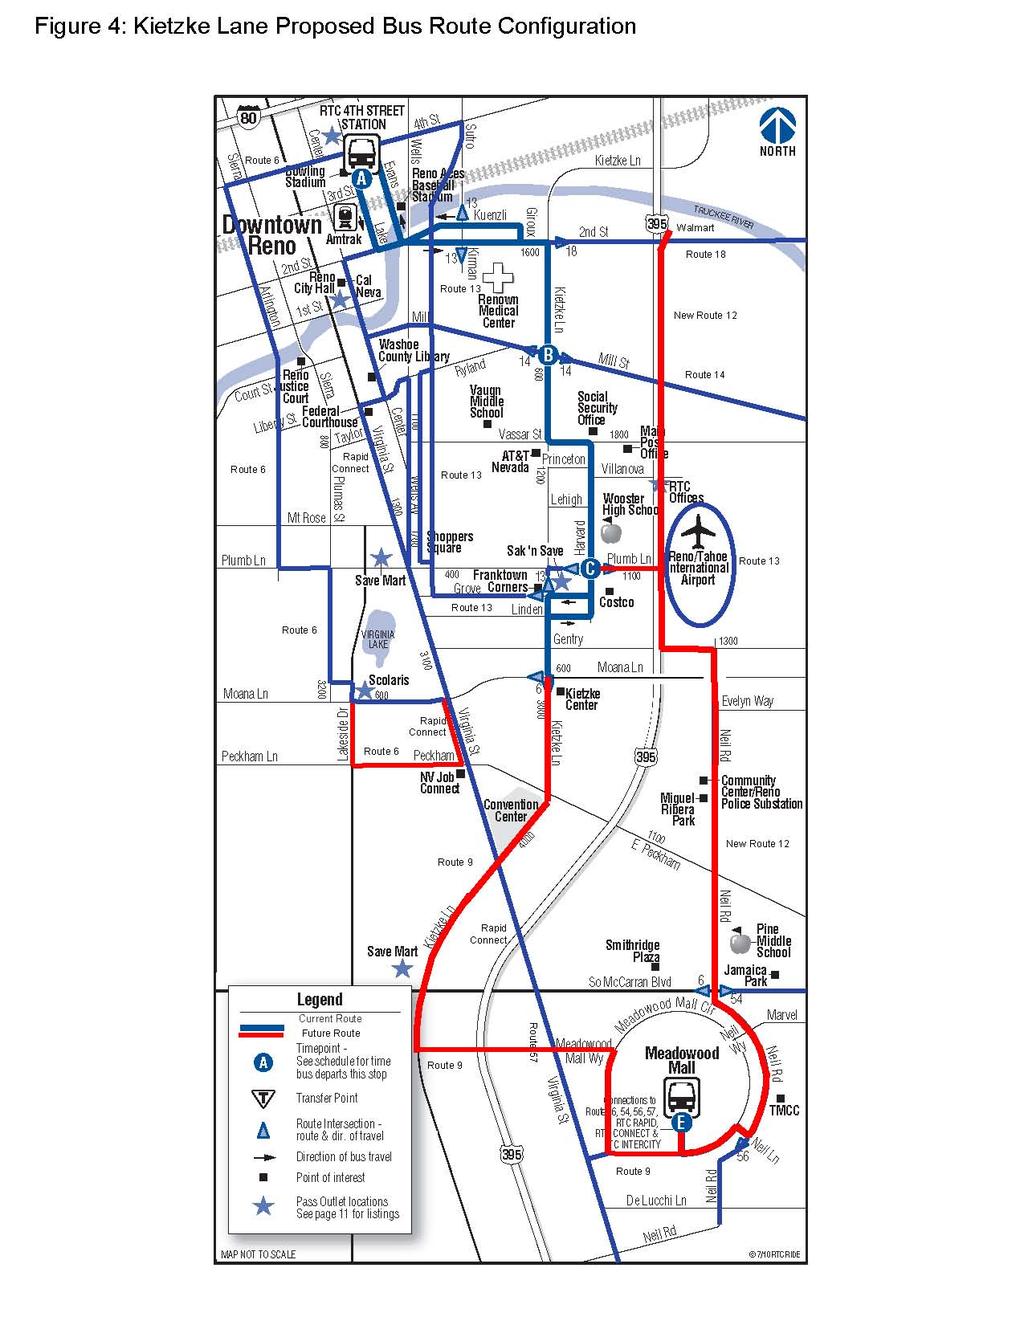 Figure 5.4 Kietzke Lane Proposed Bus Route Configuration 5.